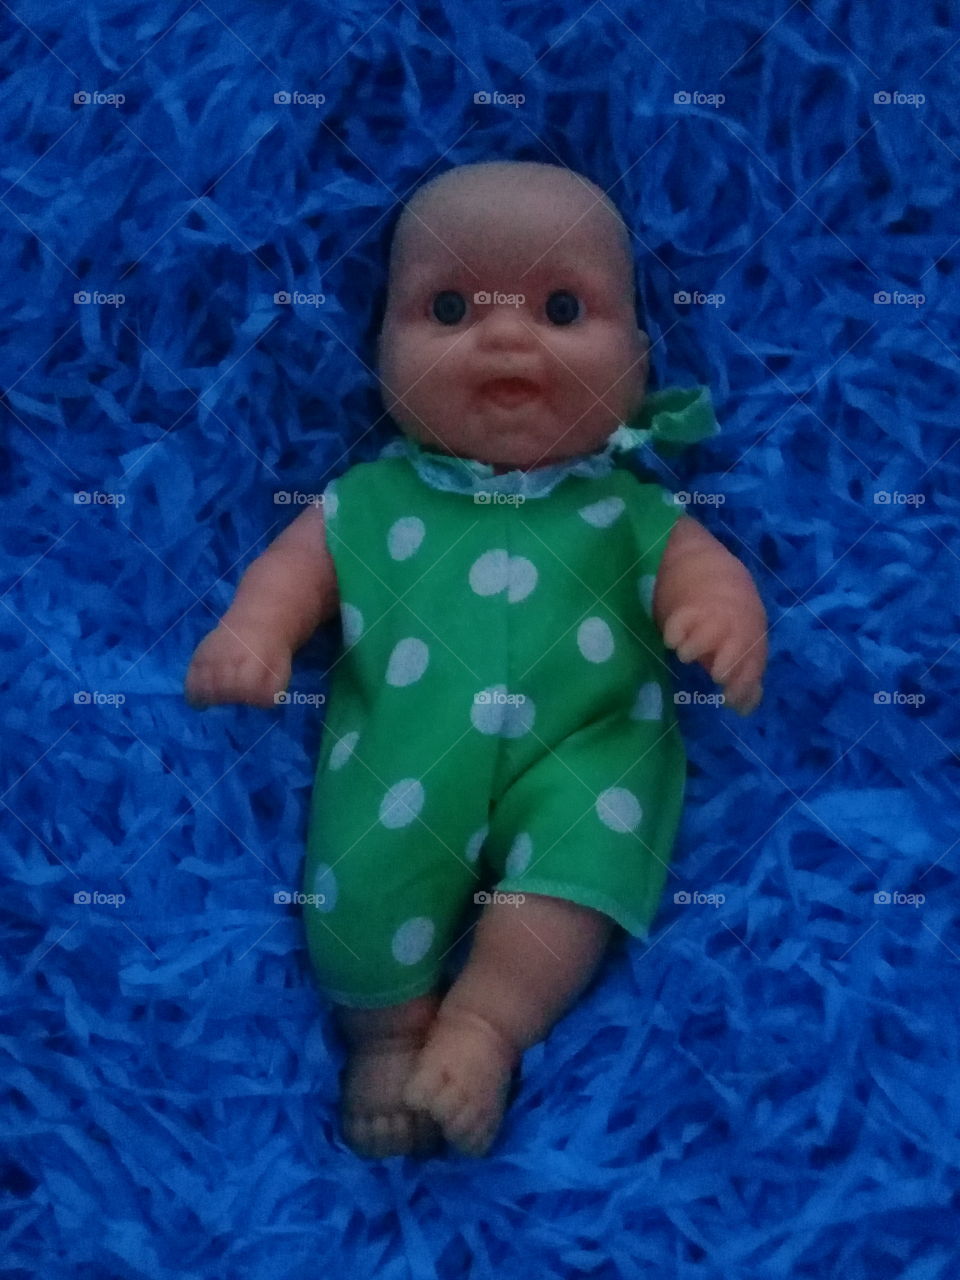 muñeca de goma acostada sobre una cama de paja azul y vestida con un enterito de tela verde.